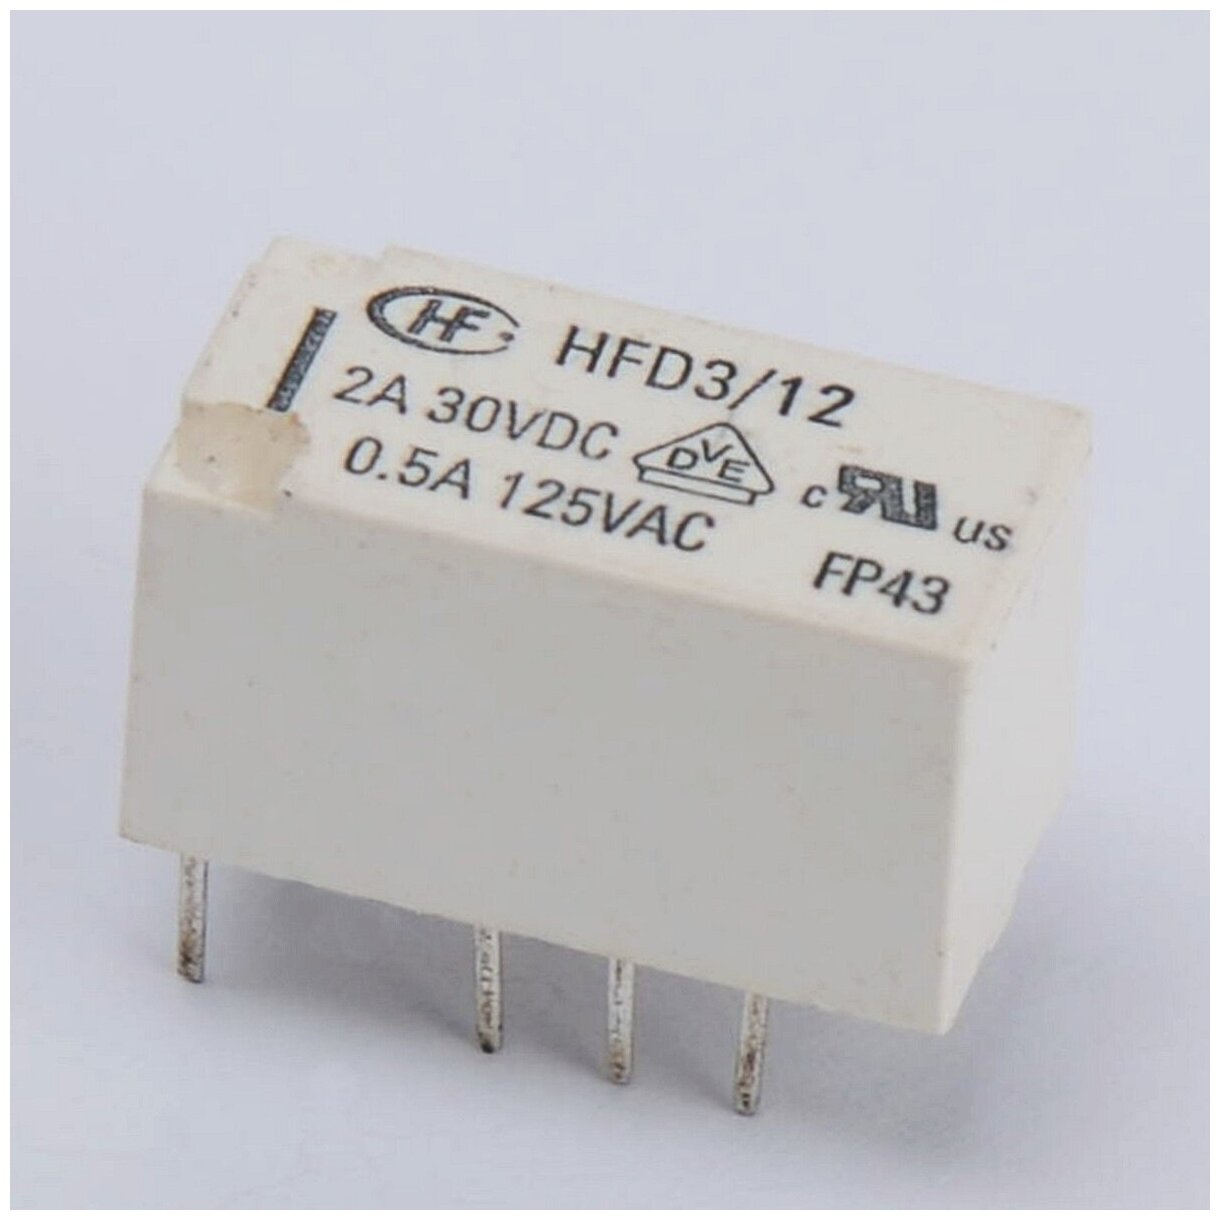 Твердотельное реле HFD3/12 2A/30VDC/0.5A/125VAC (018026)